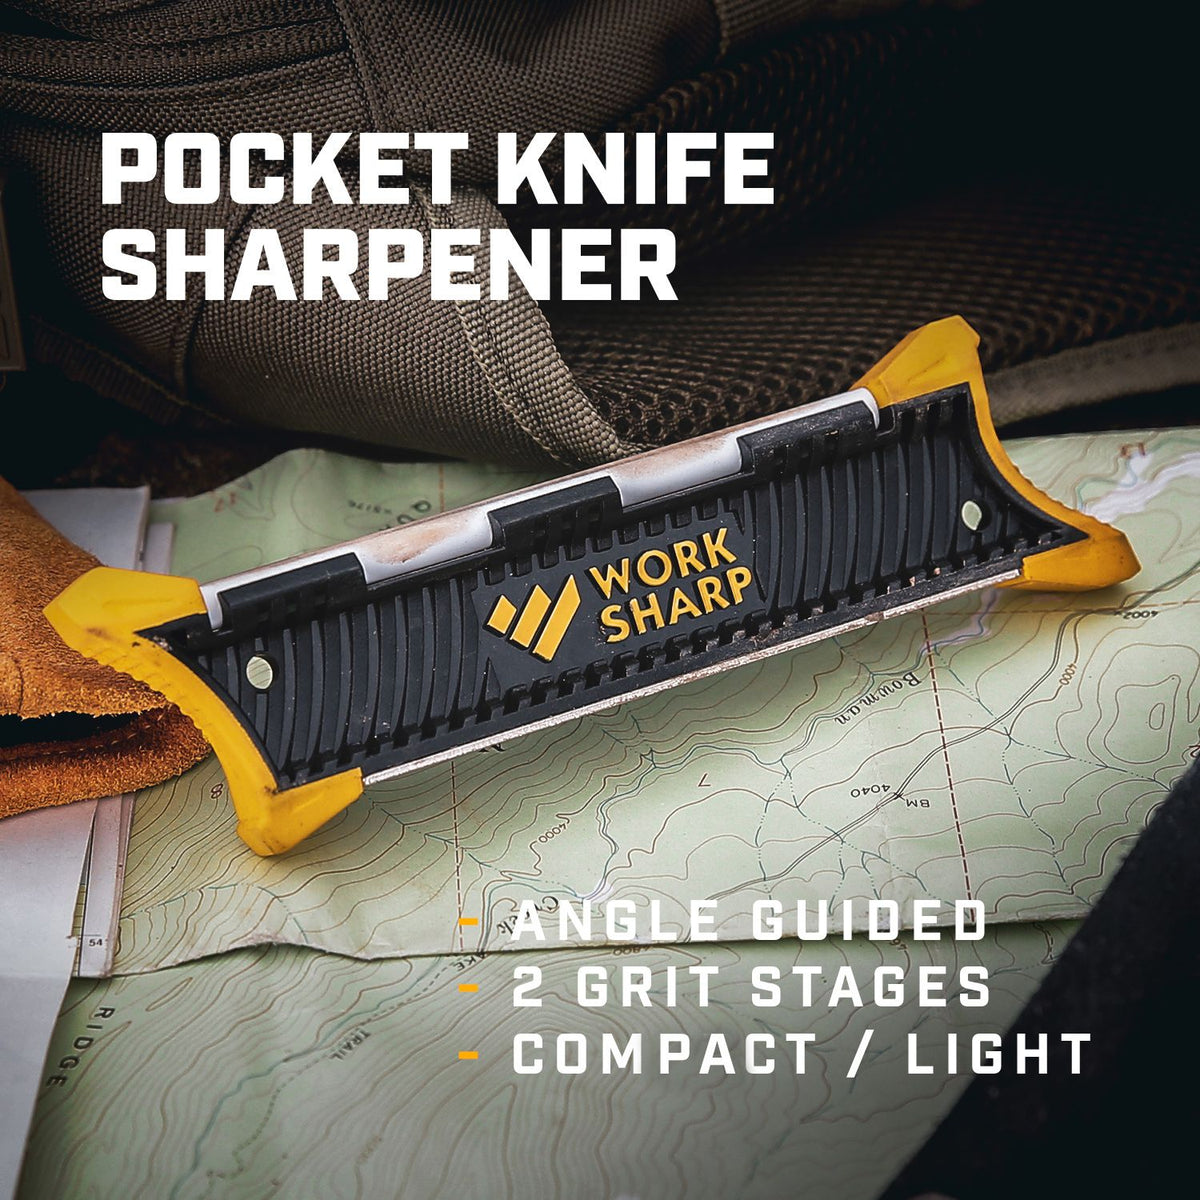 WORK SHARP Guided Field Sharpener – Pops Knife Supply